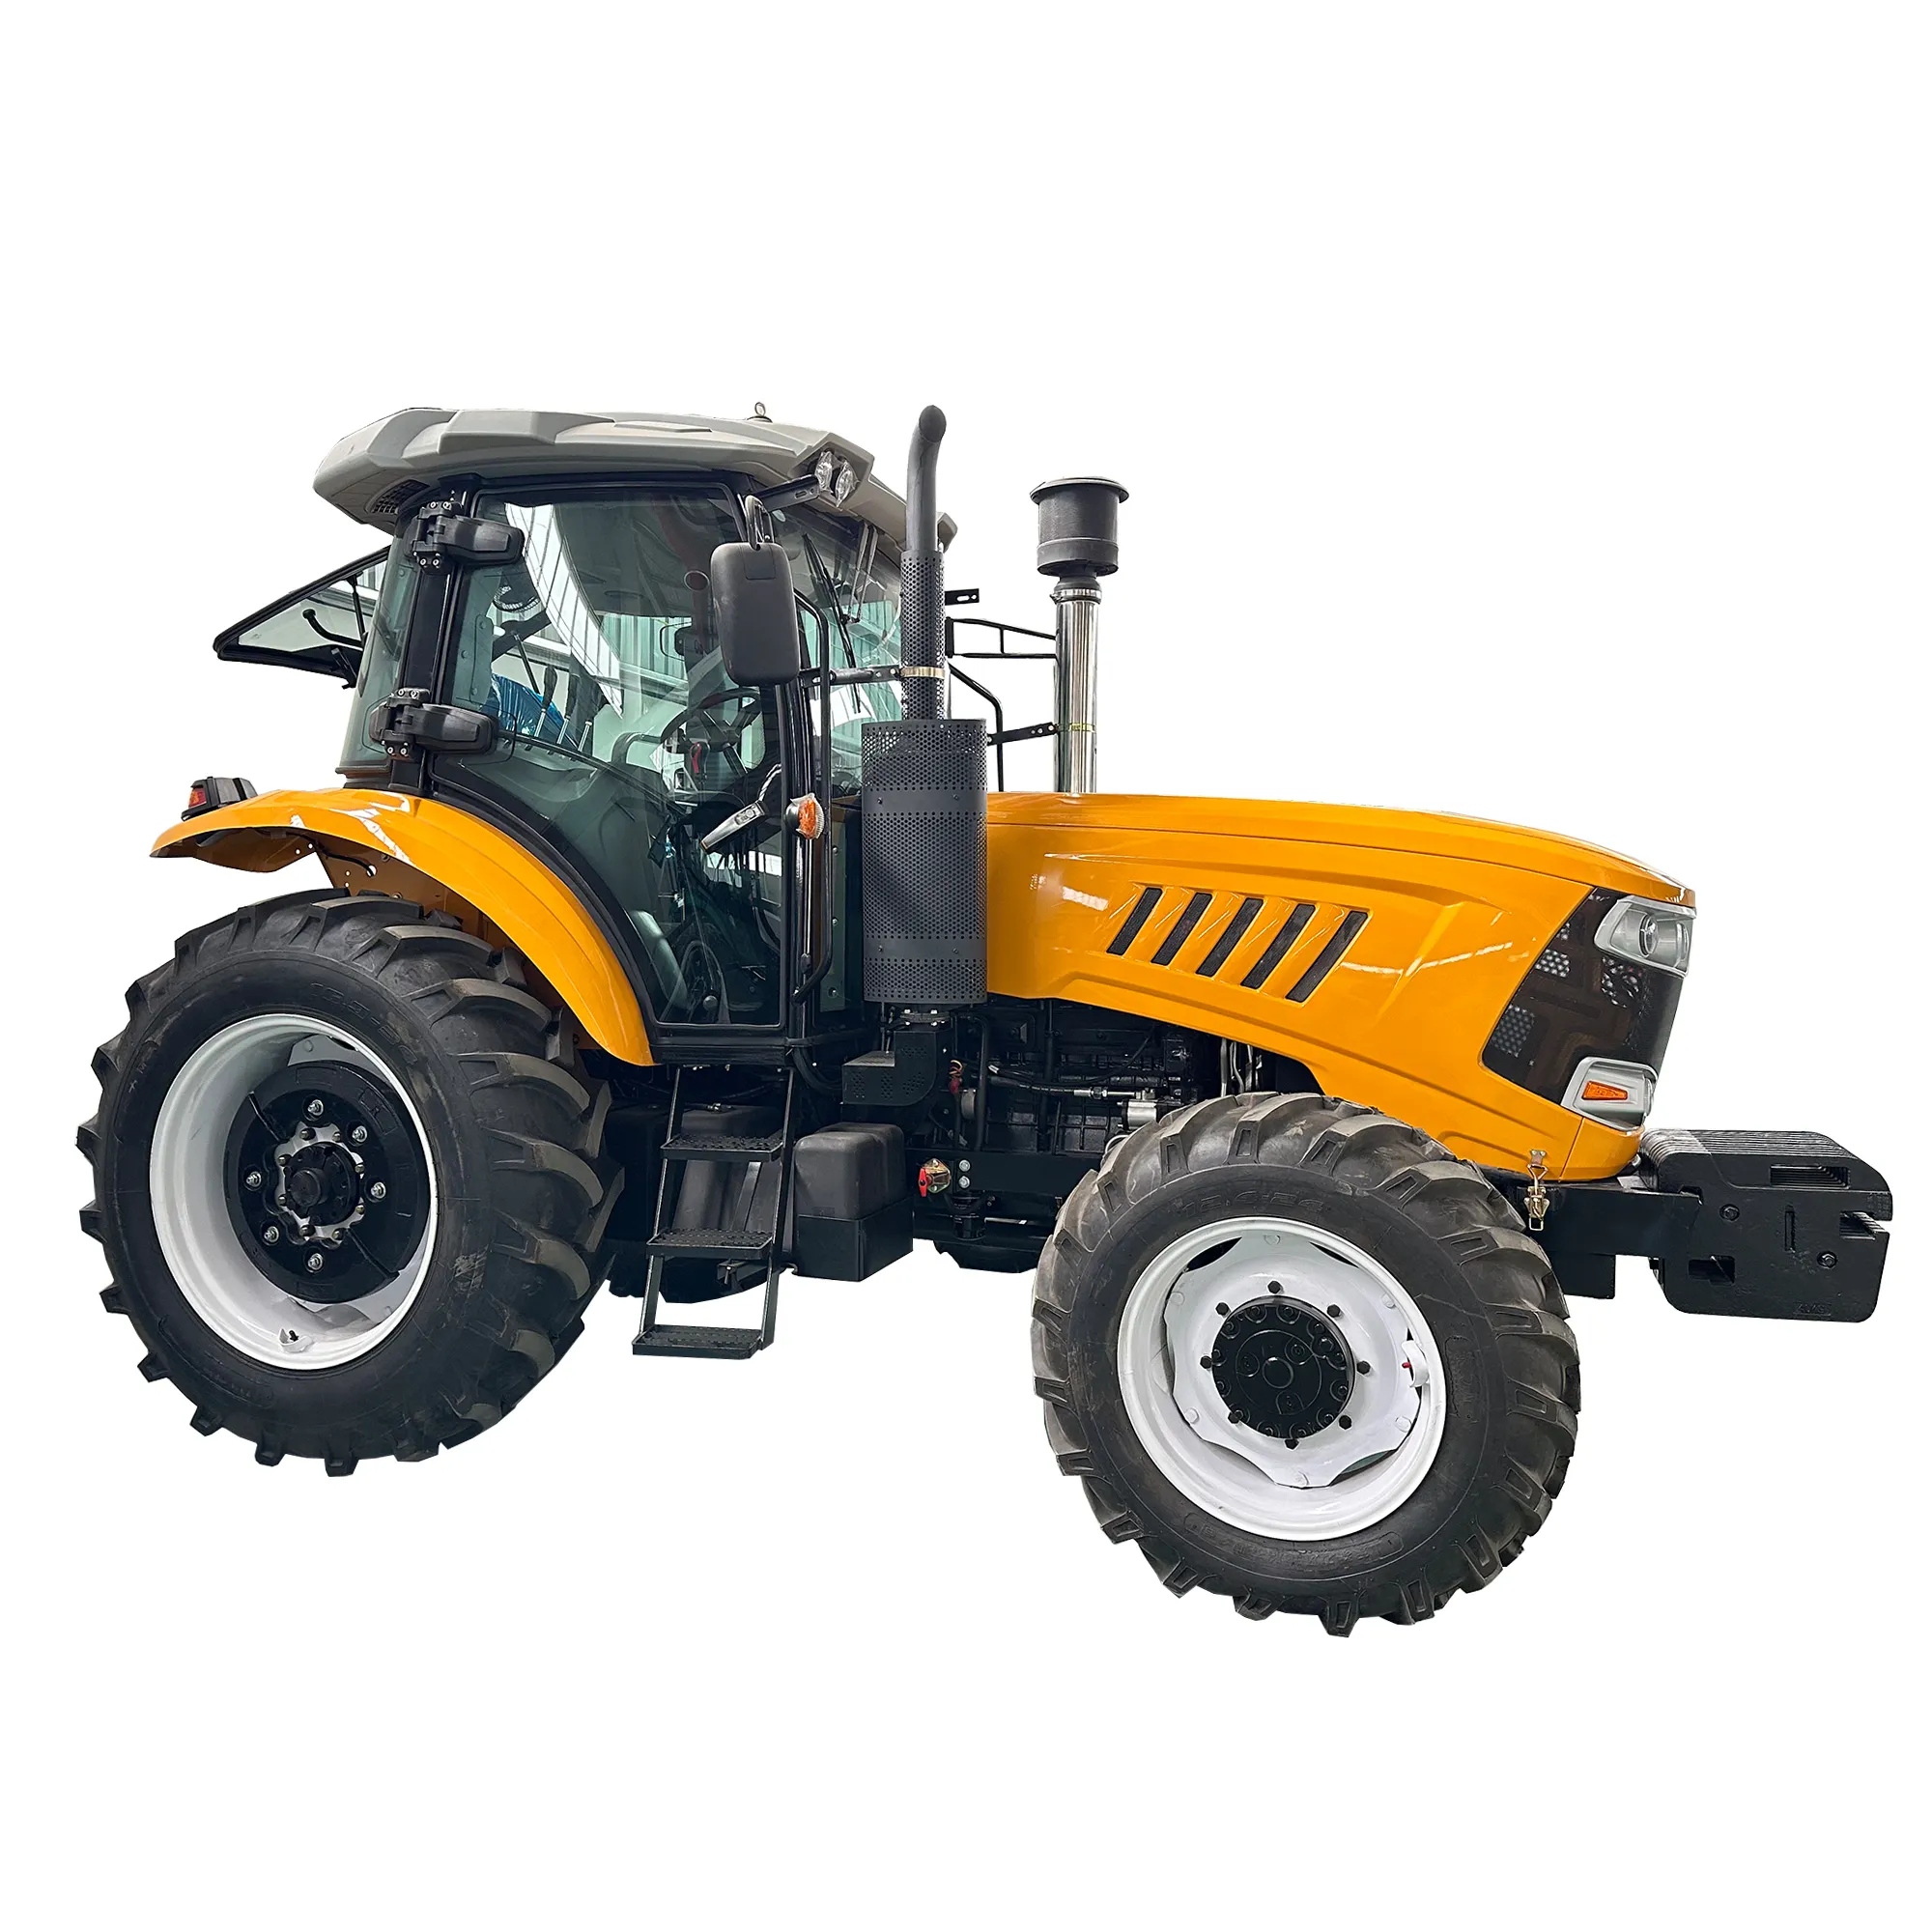 Satılık 4x4 160hp evrensel tarım traktörleri dizel motor